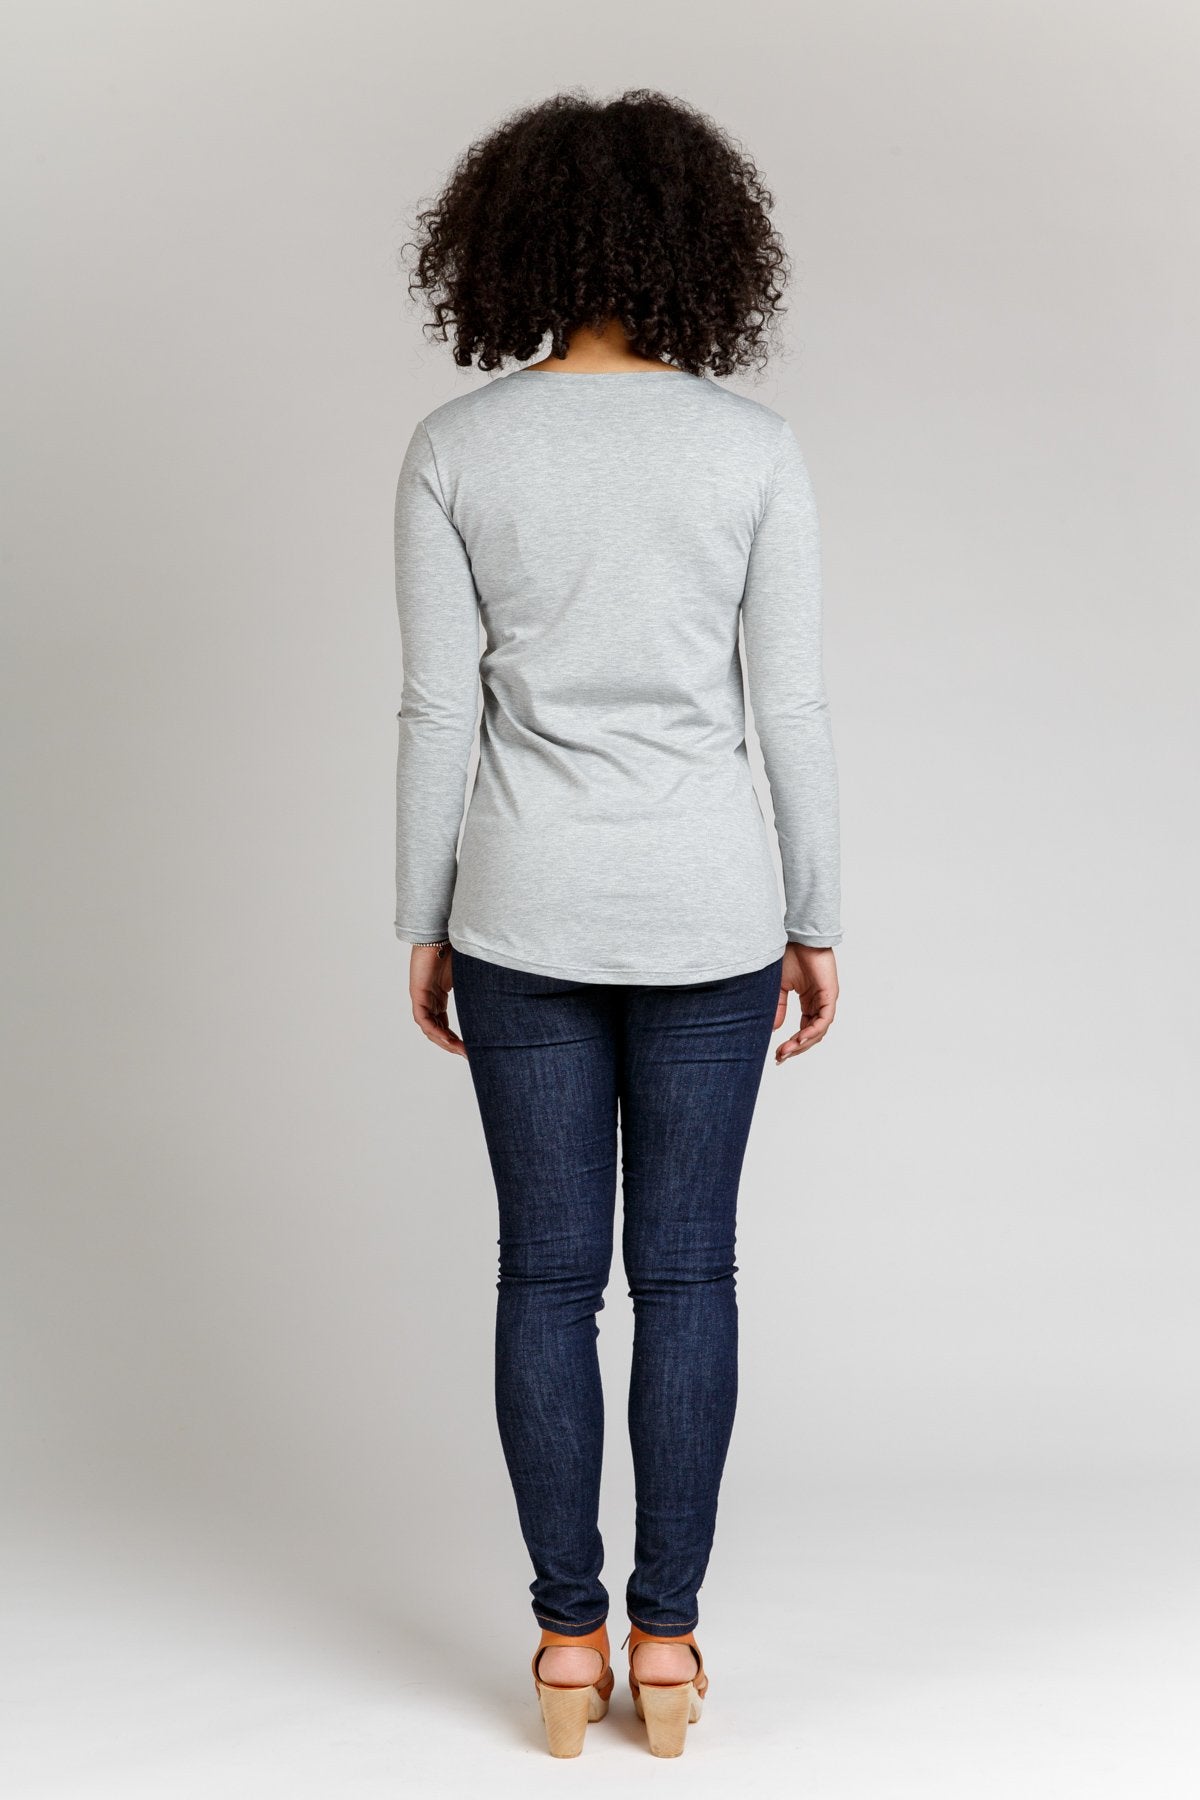 Megan Nielsen Briar Sweater and T-Shirt